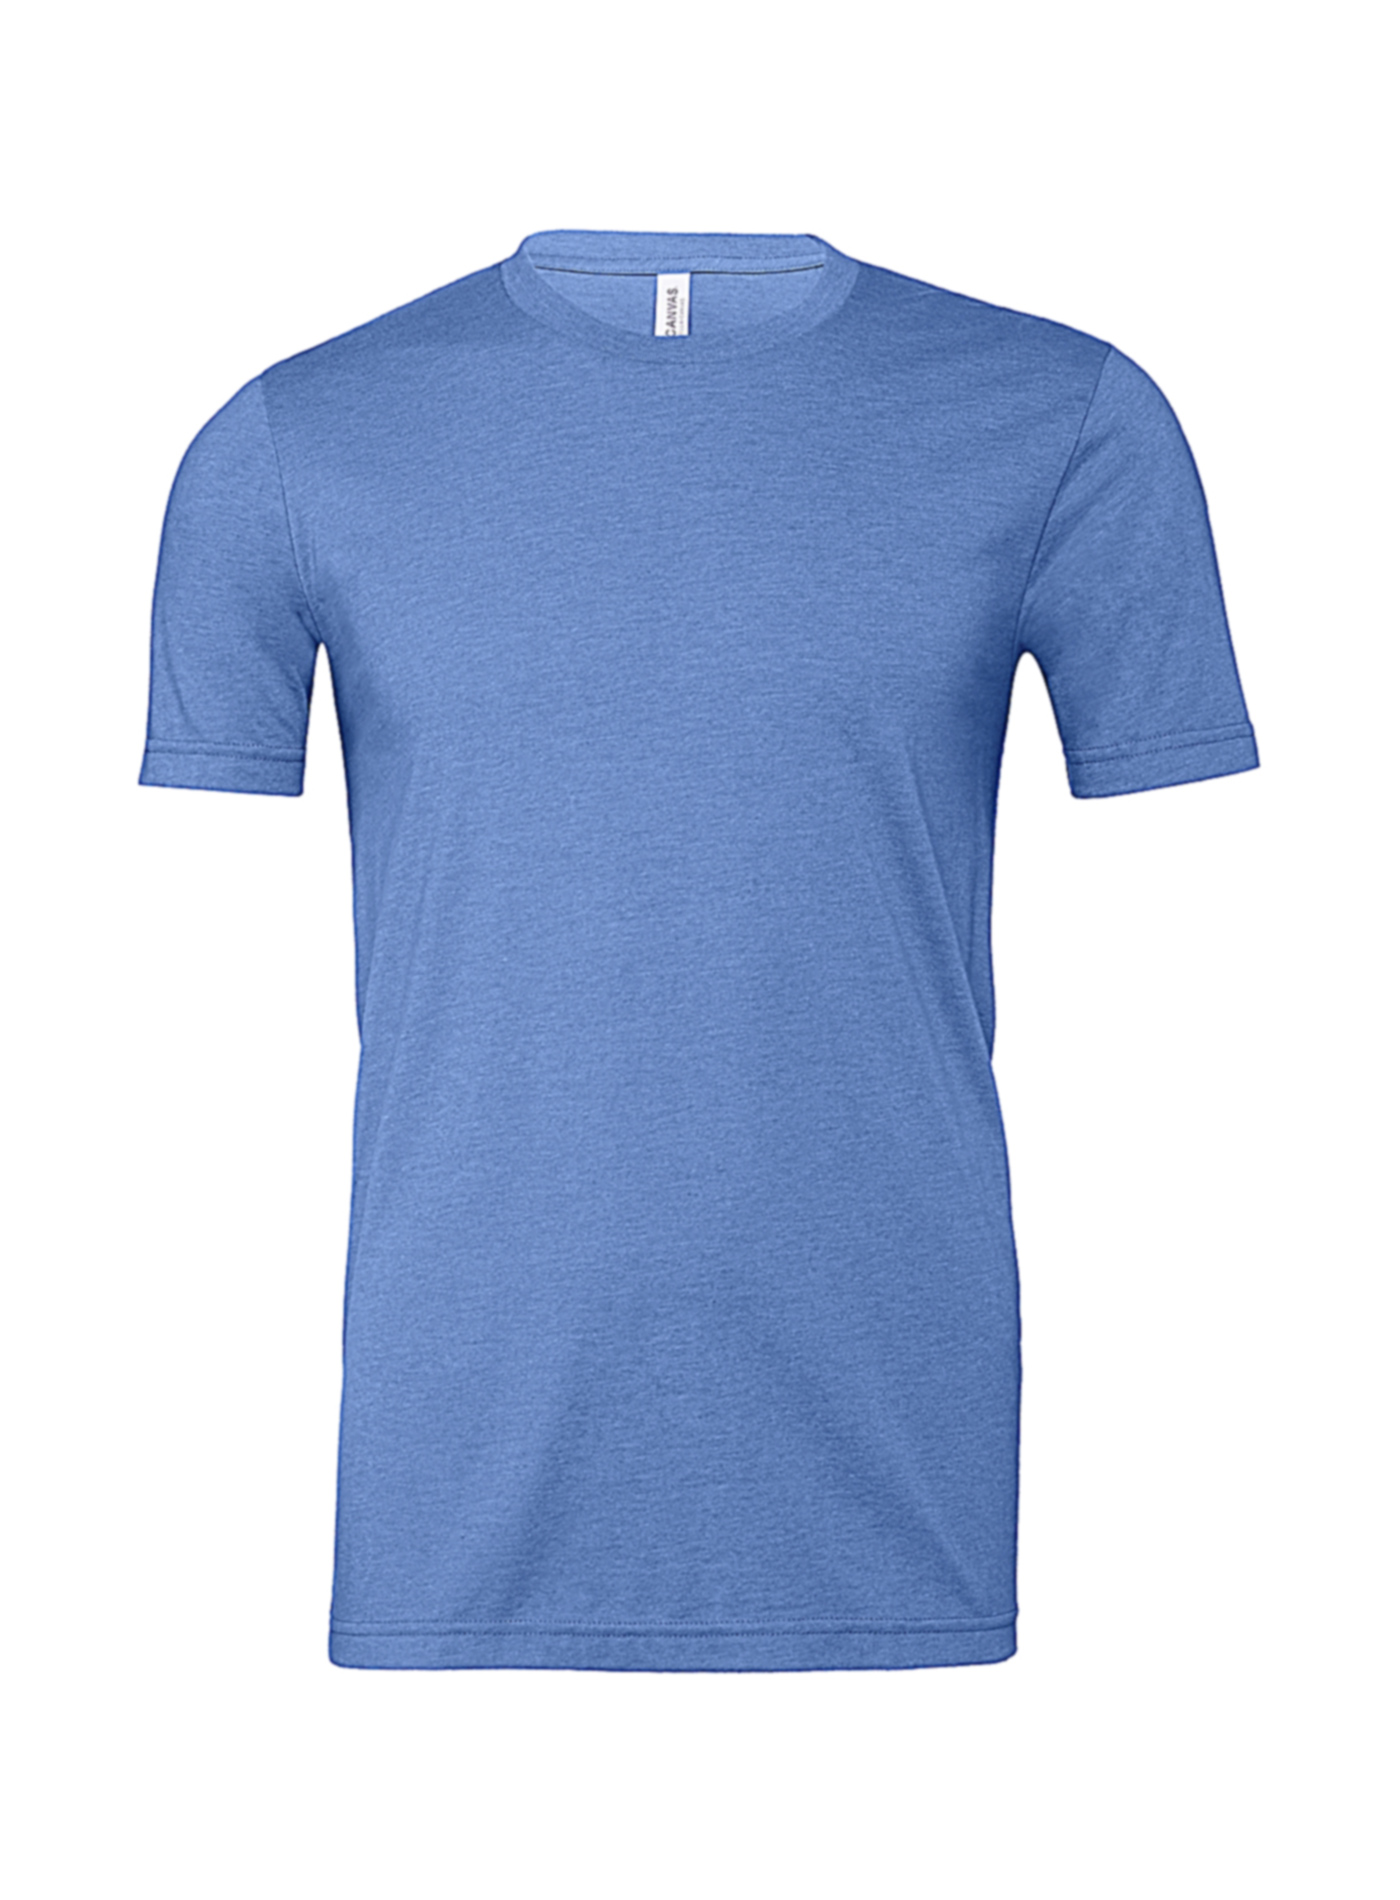 Pánské tričko Jersey Heather - Modrá M